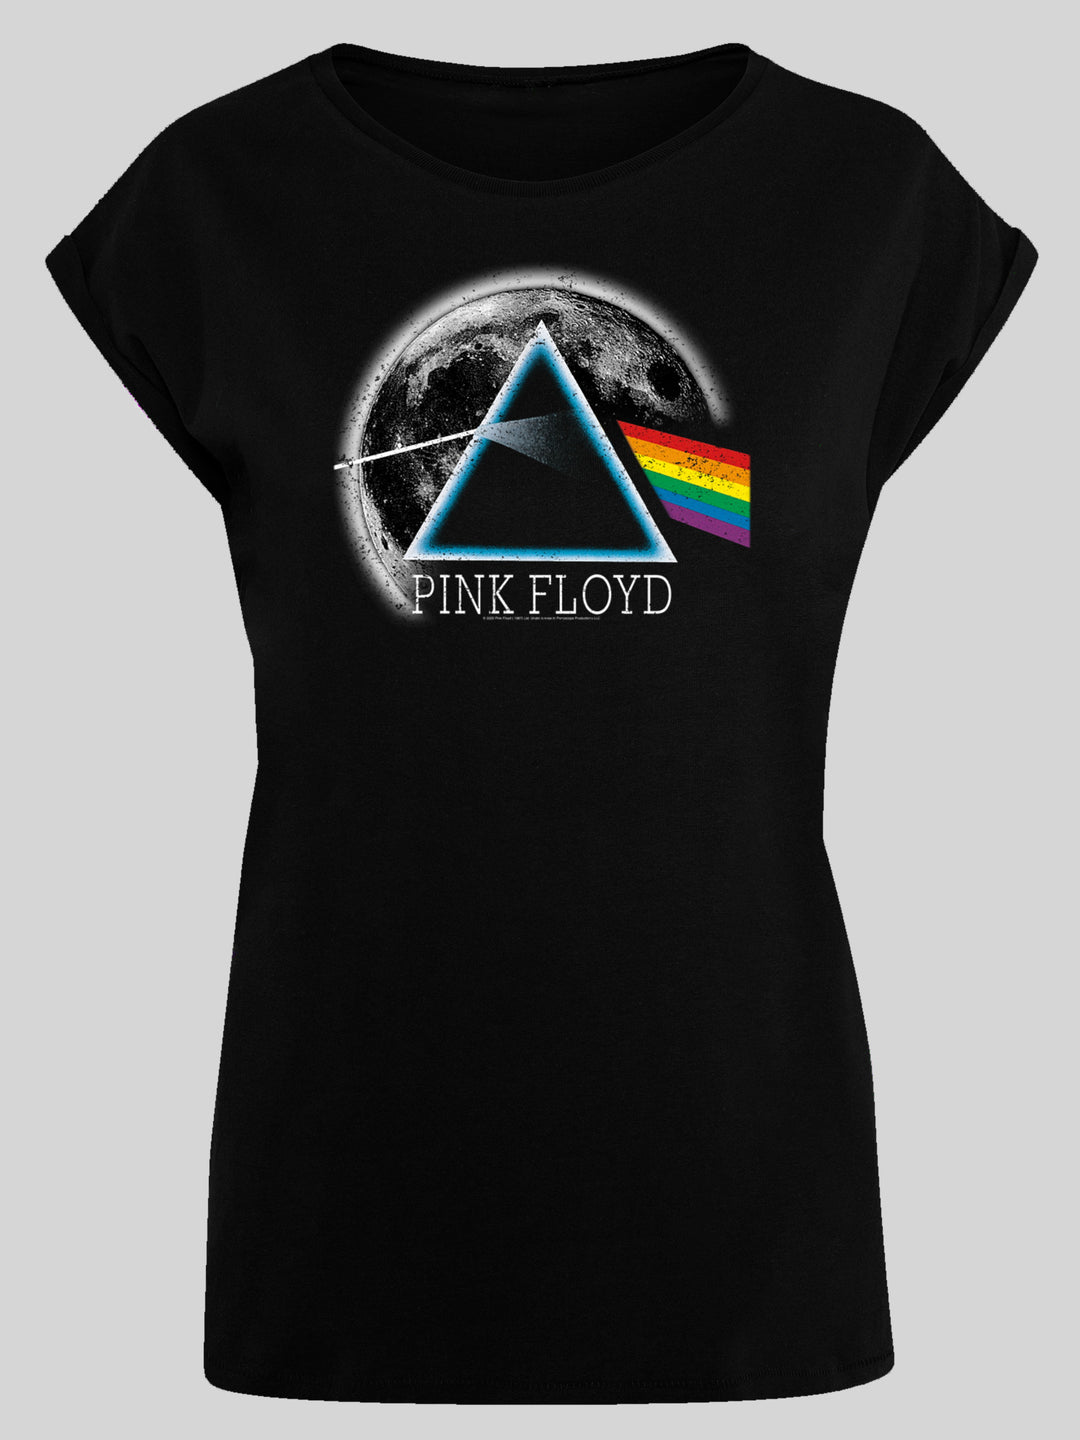 Pink Floyd T-Shirt | Dark Side of The Moon | Premium Short Sleeve Ladies Tee